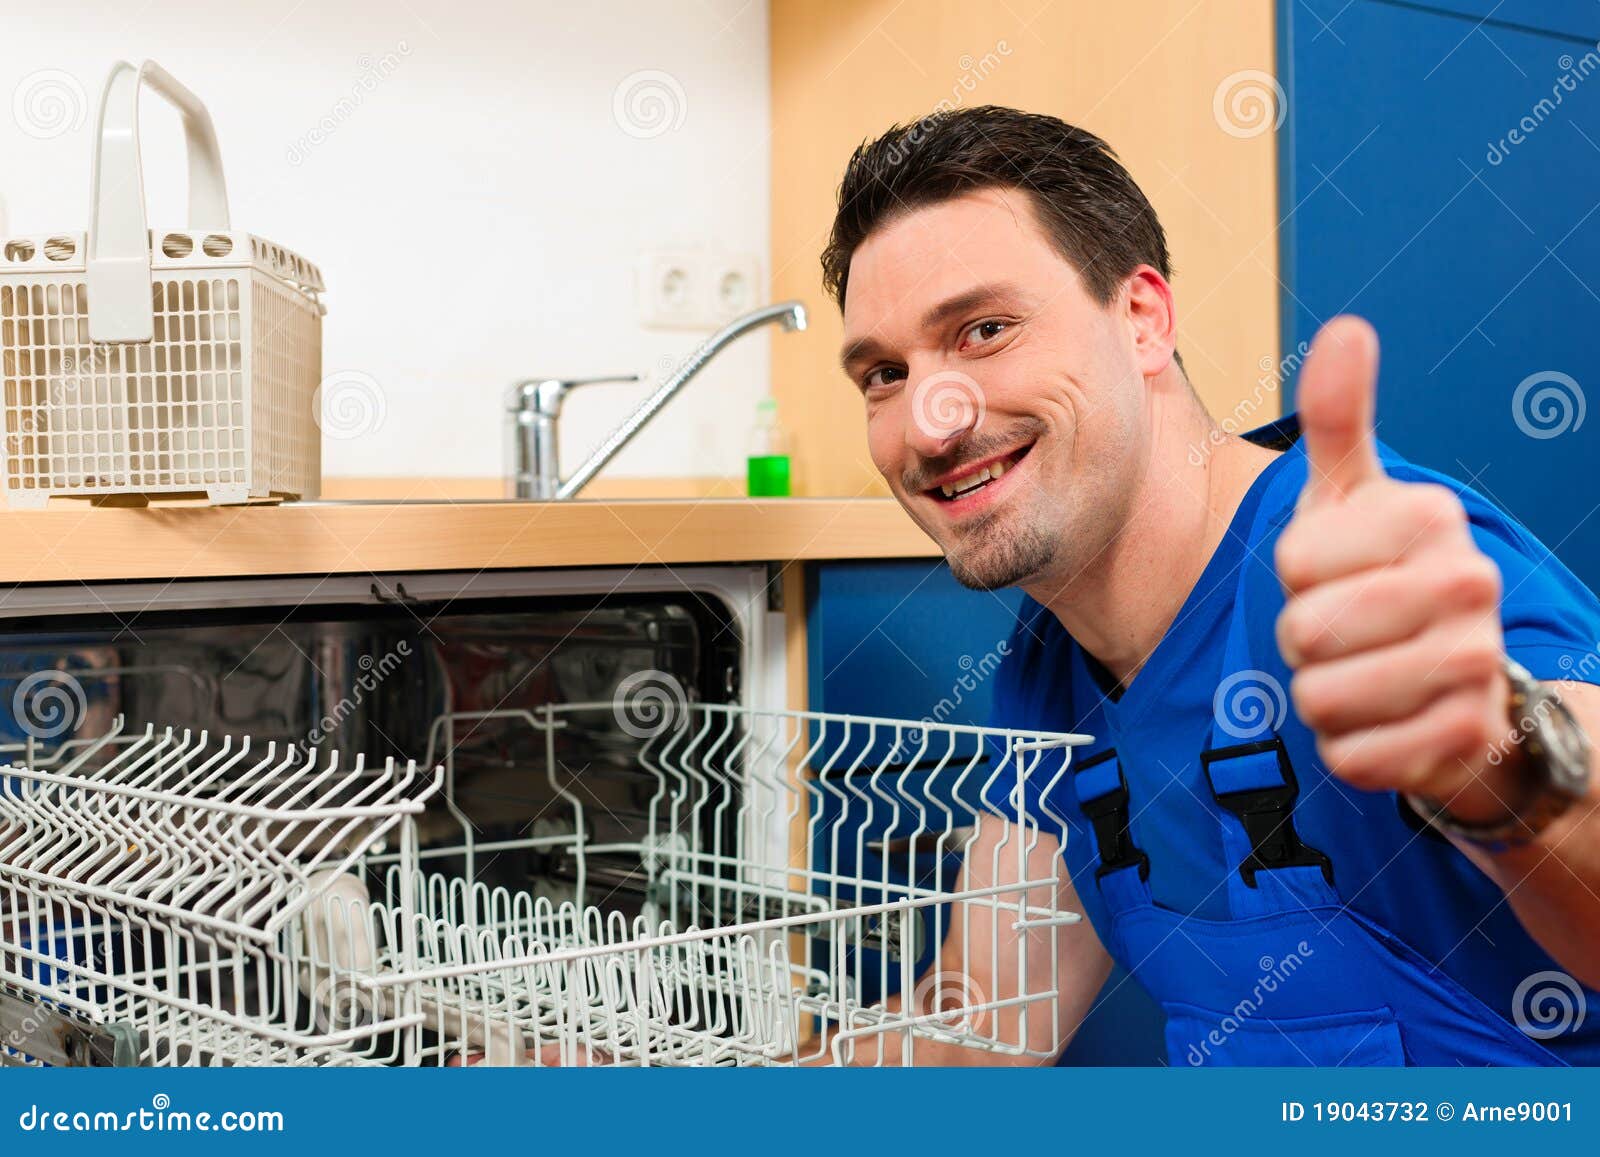 technician repairing the dishwasher